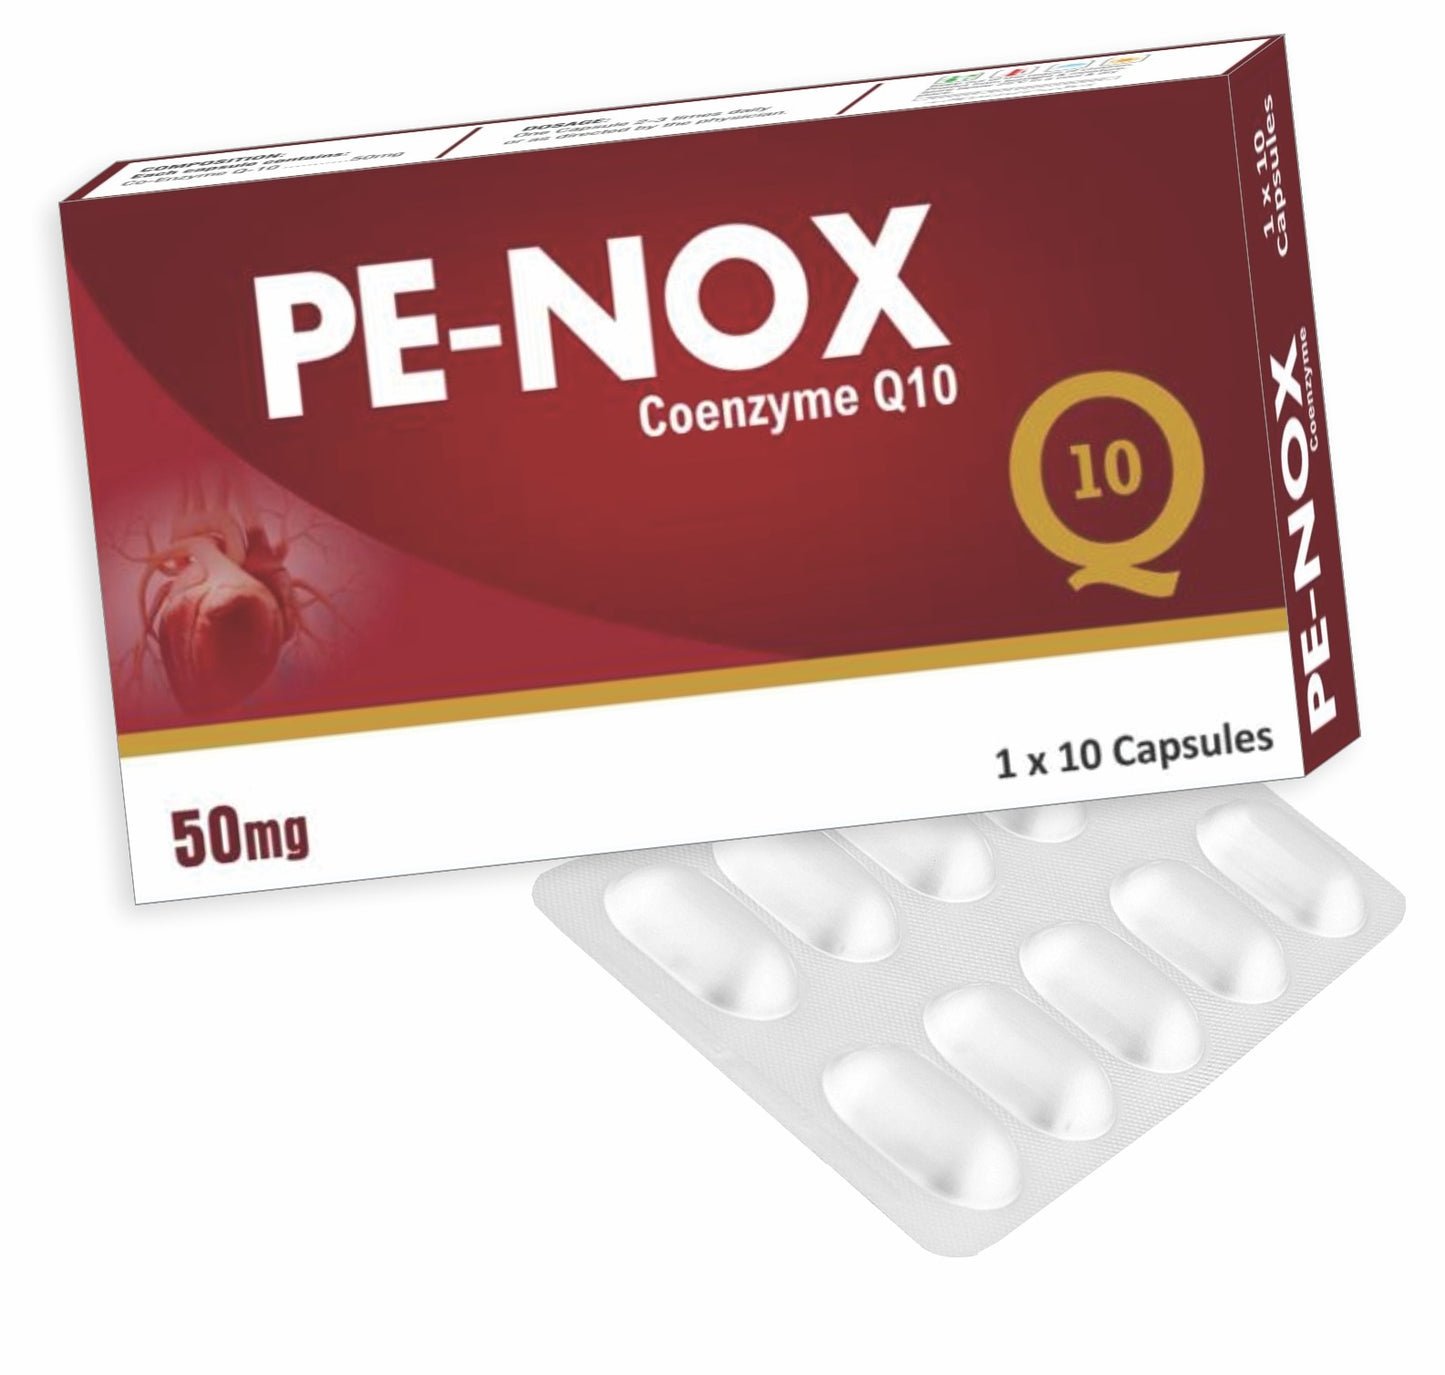 PE-NOX (Co enzyme Q10)